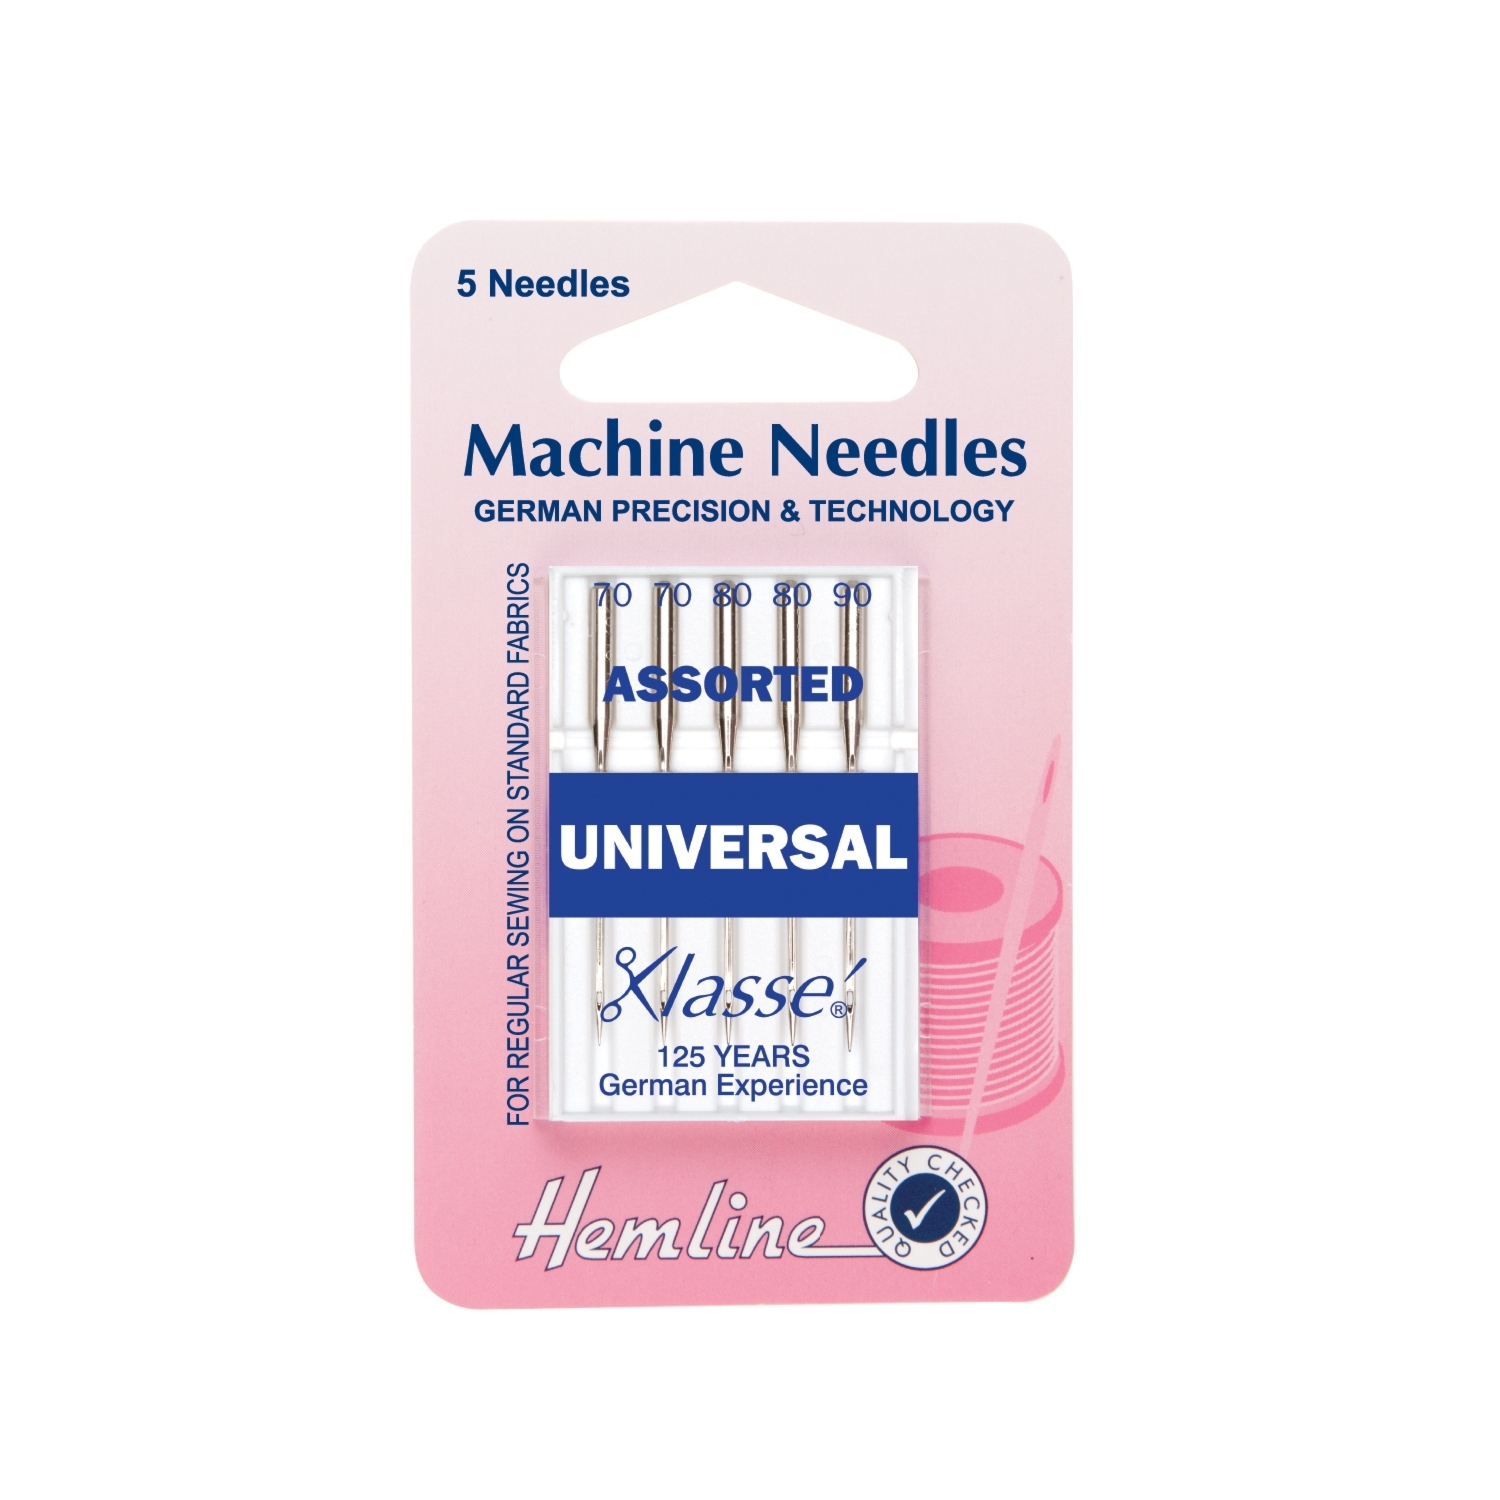 Hemline Machine Needles Universal Assorted Image